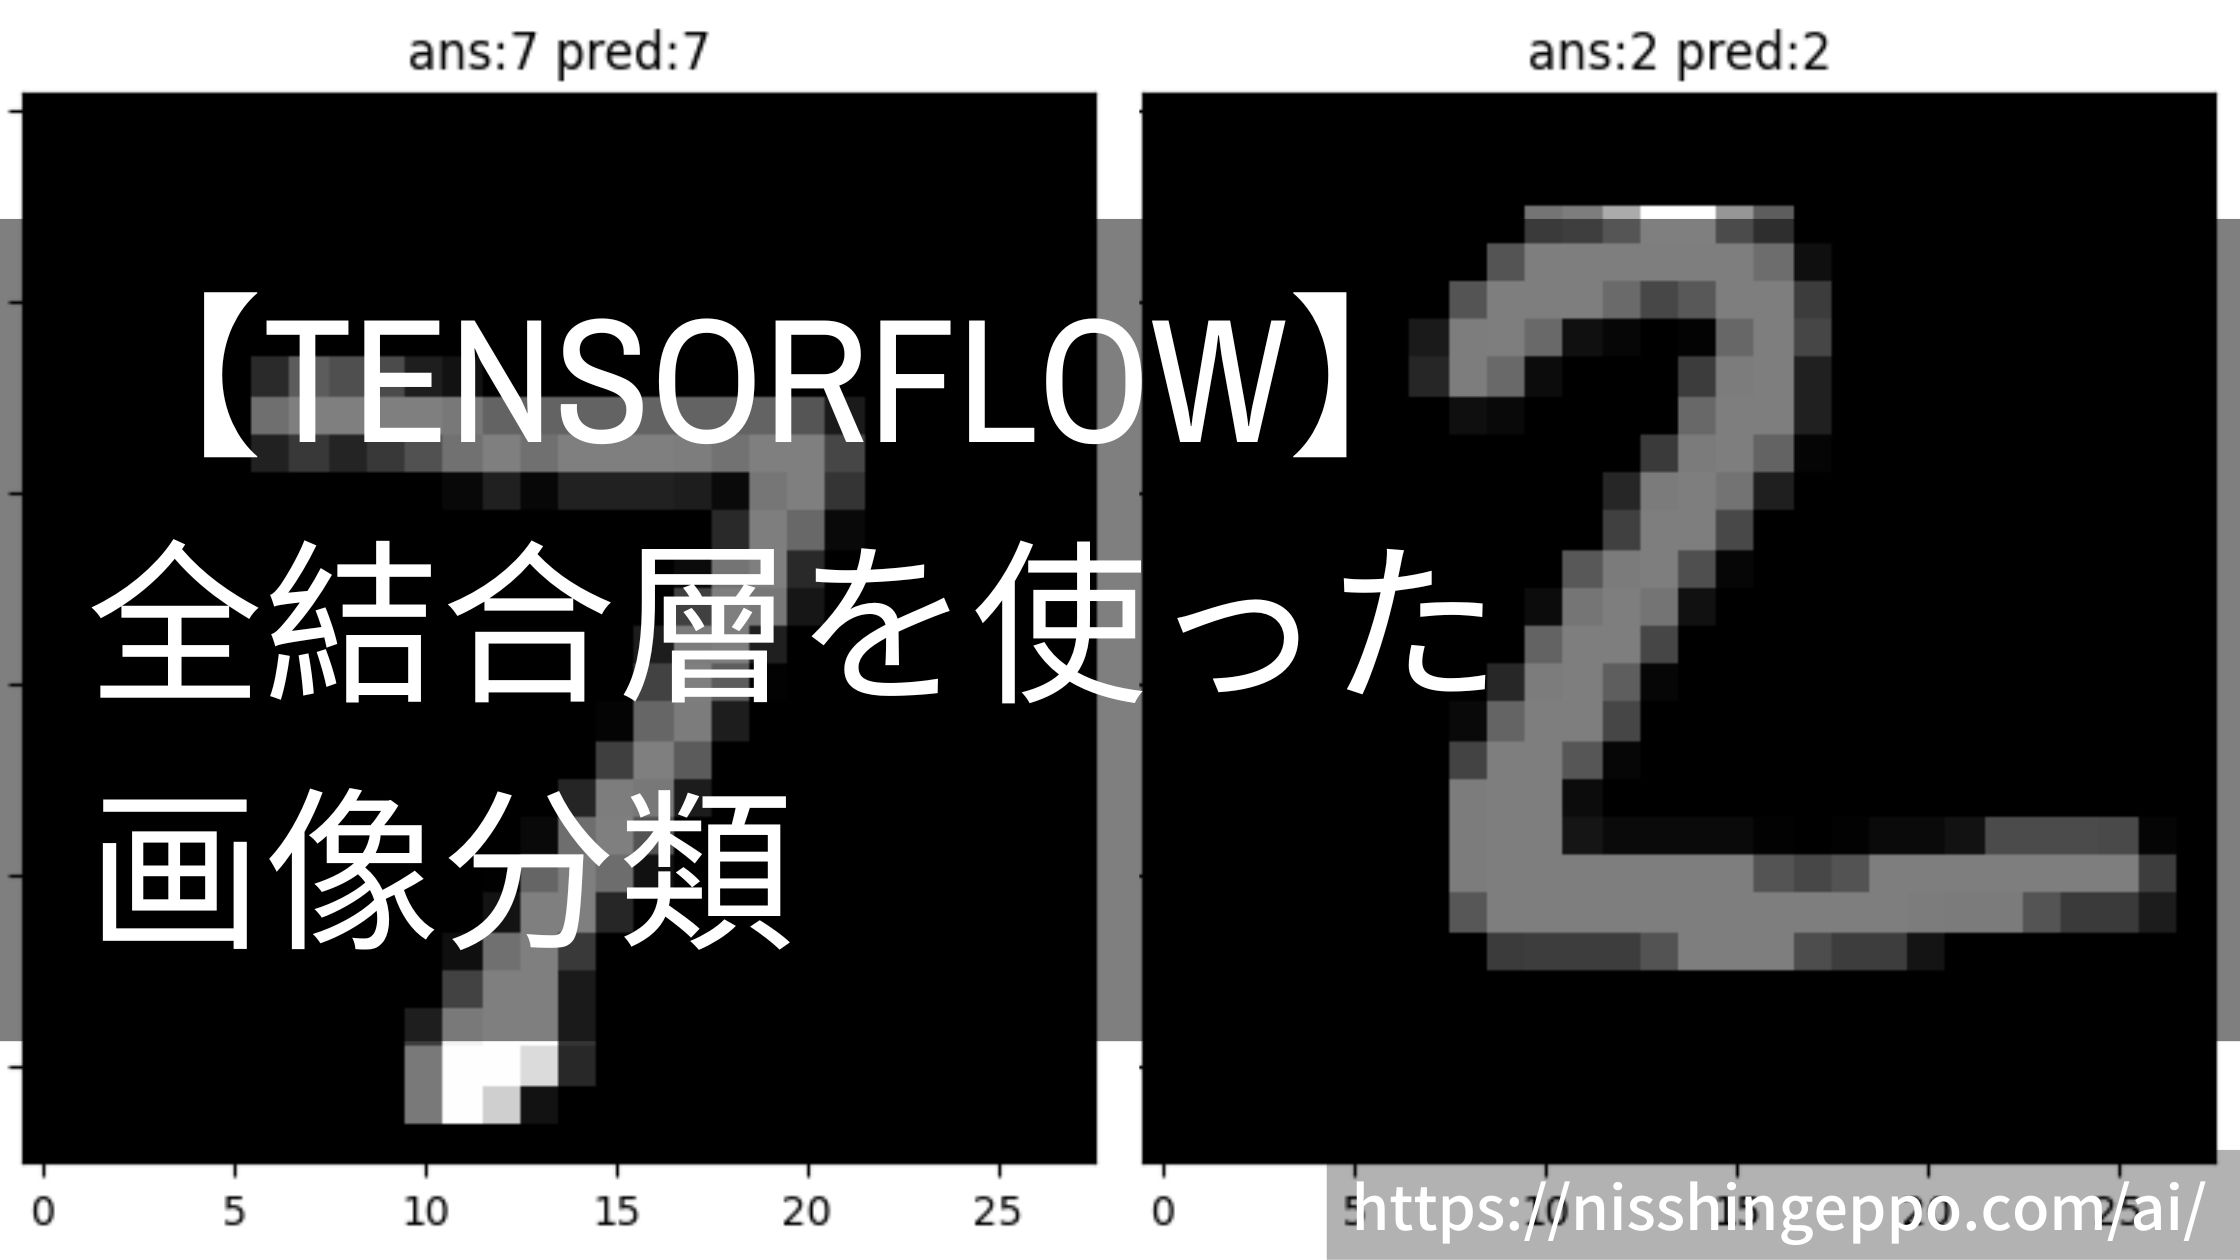 【TensorFlow】全結合層を使った画像分類をやってみる